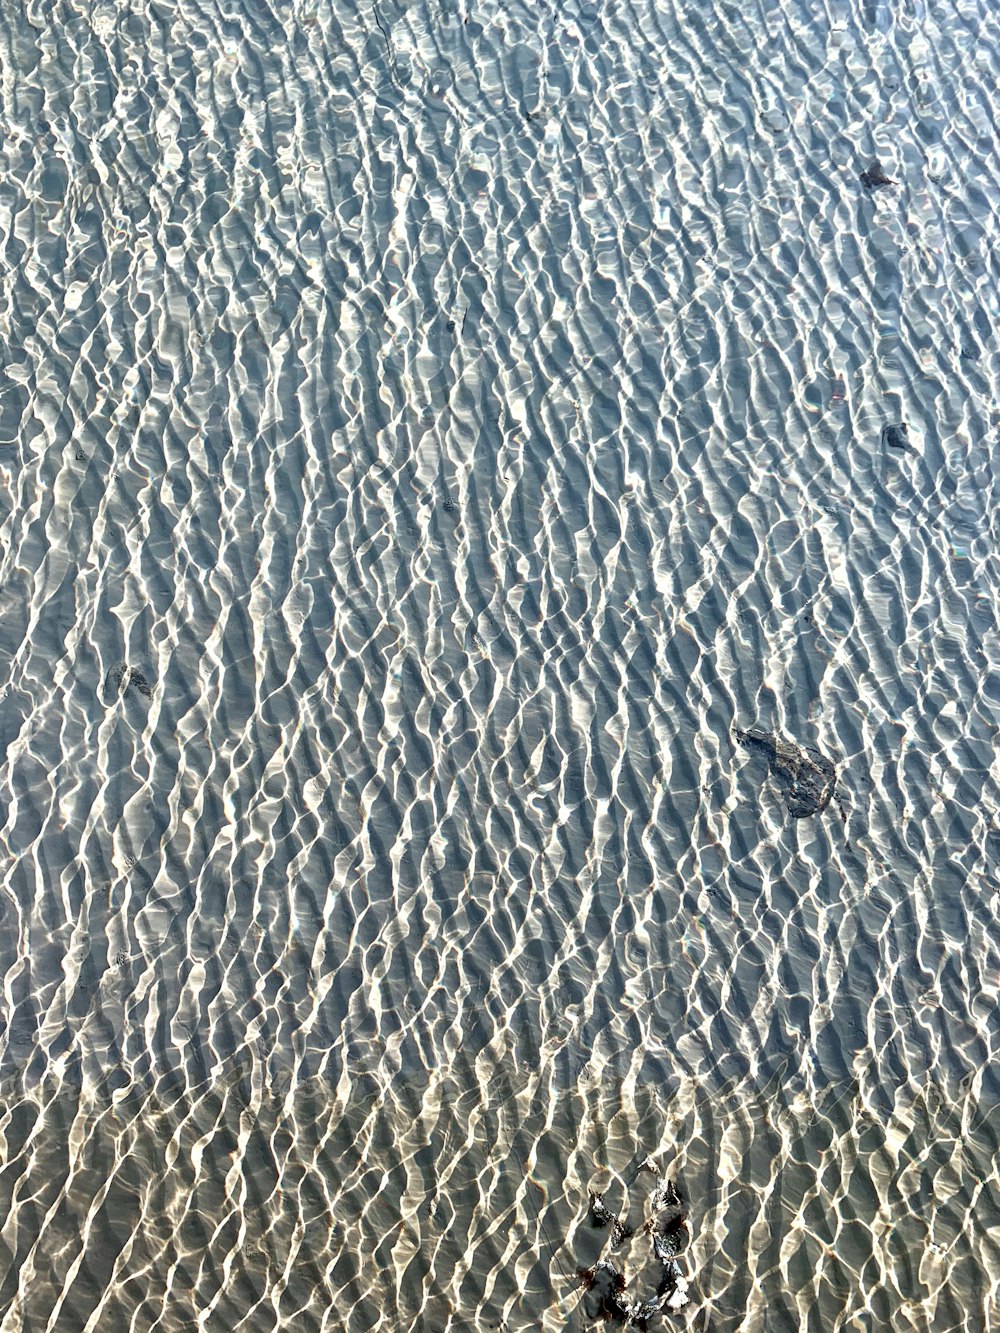 Ein Vogel steht auf dem Sand am Strand